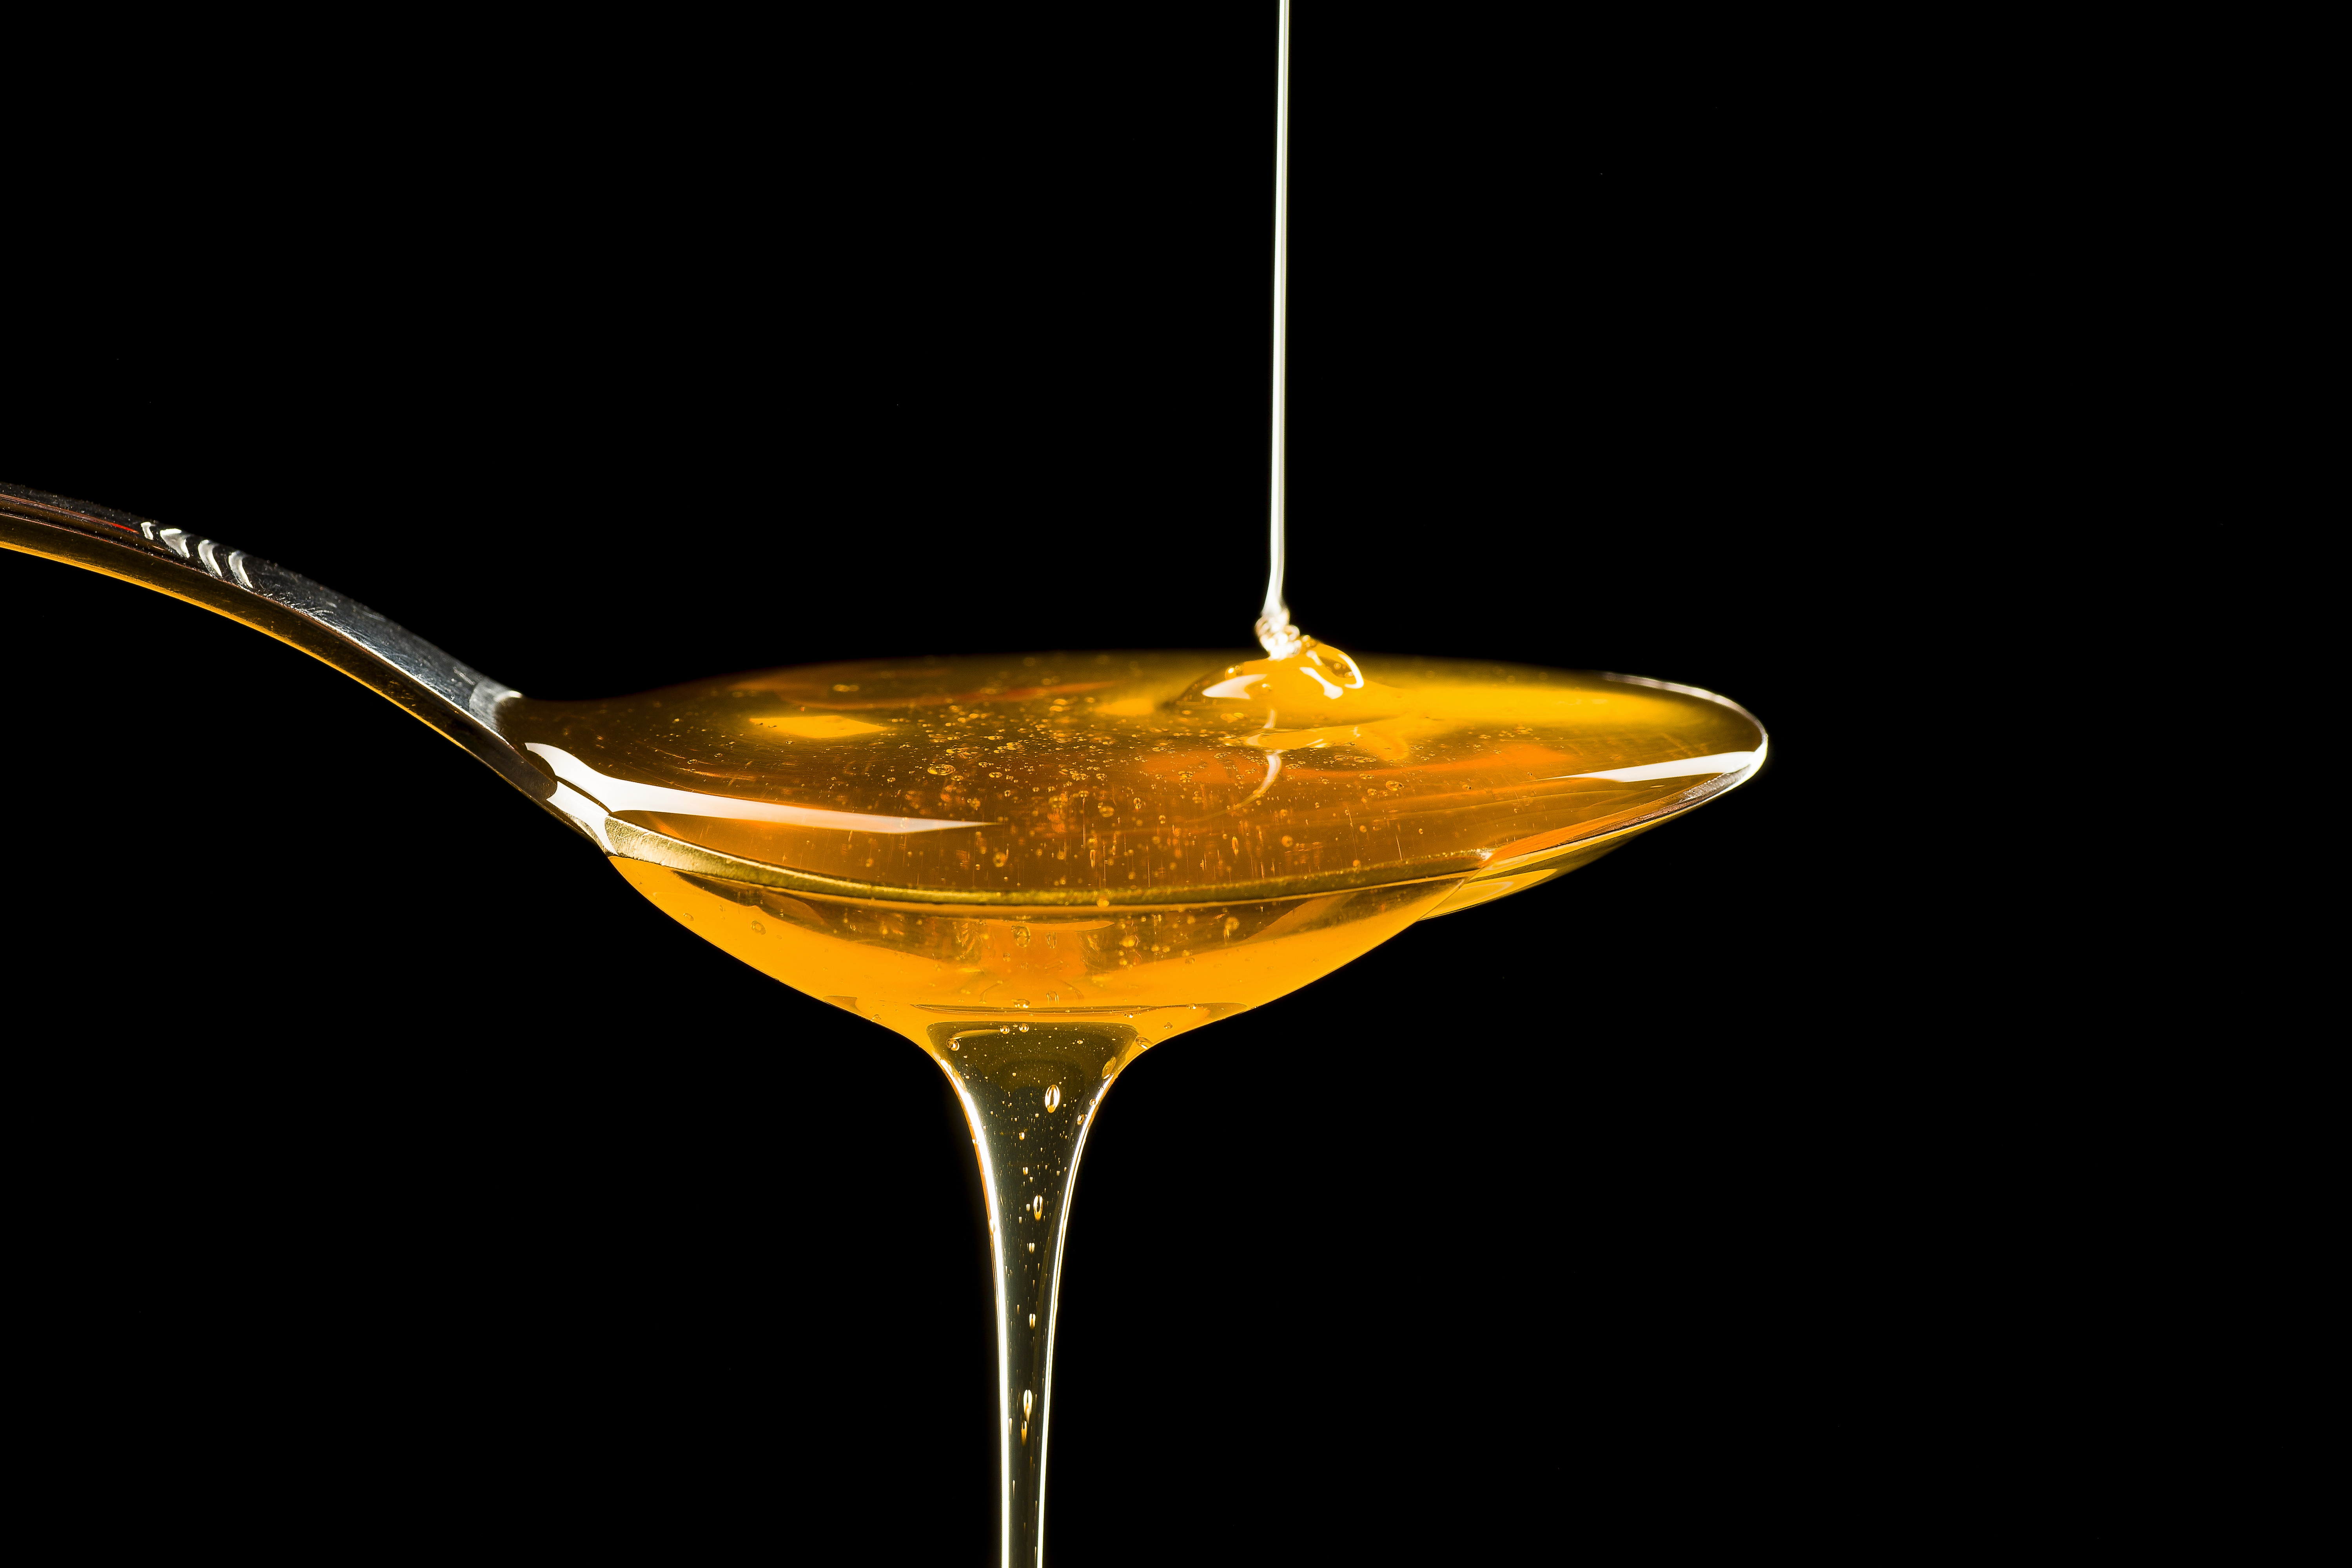 Vendu comme aphrodisiaque, un miel classé dangereux pour la santé –  Libération